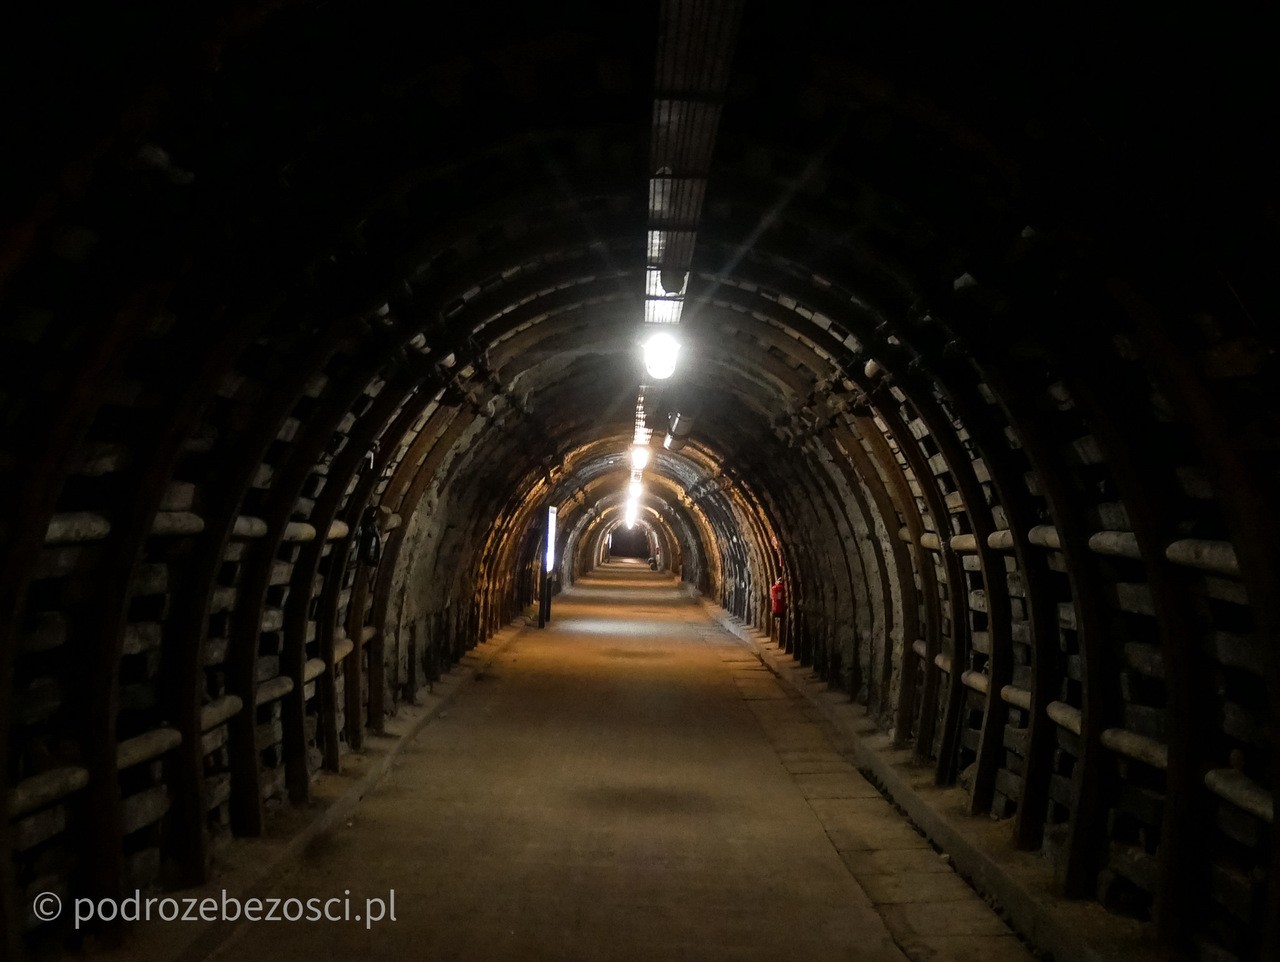 stara kopalnia julia walbrzych poziemia trasa podziemna